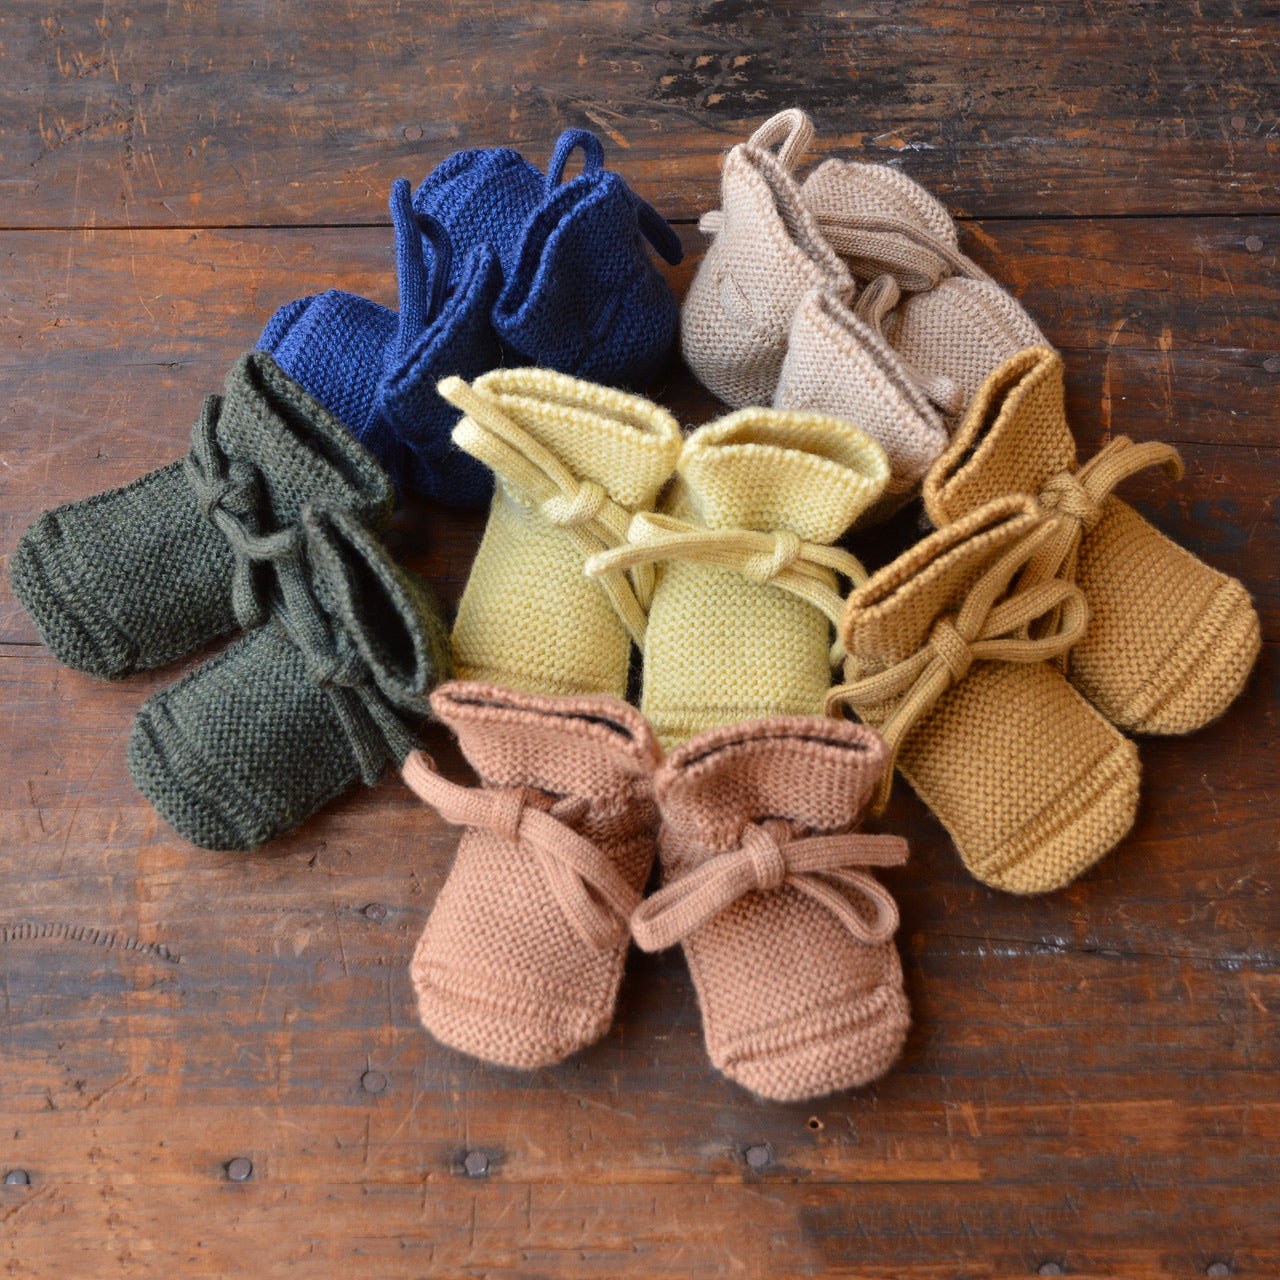 Booties - 100% Merino Wool (Newborn - 9m)